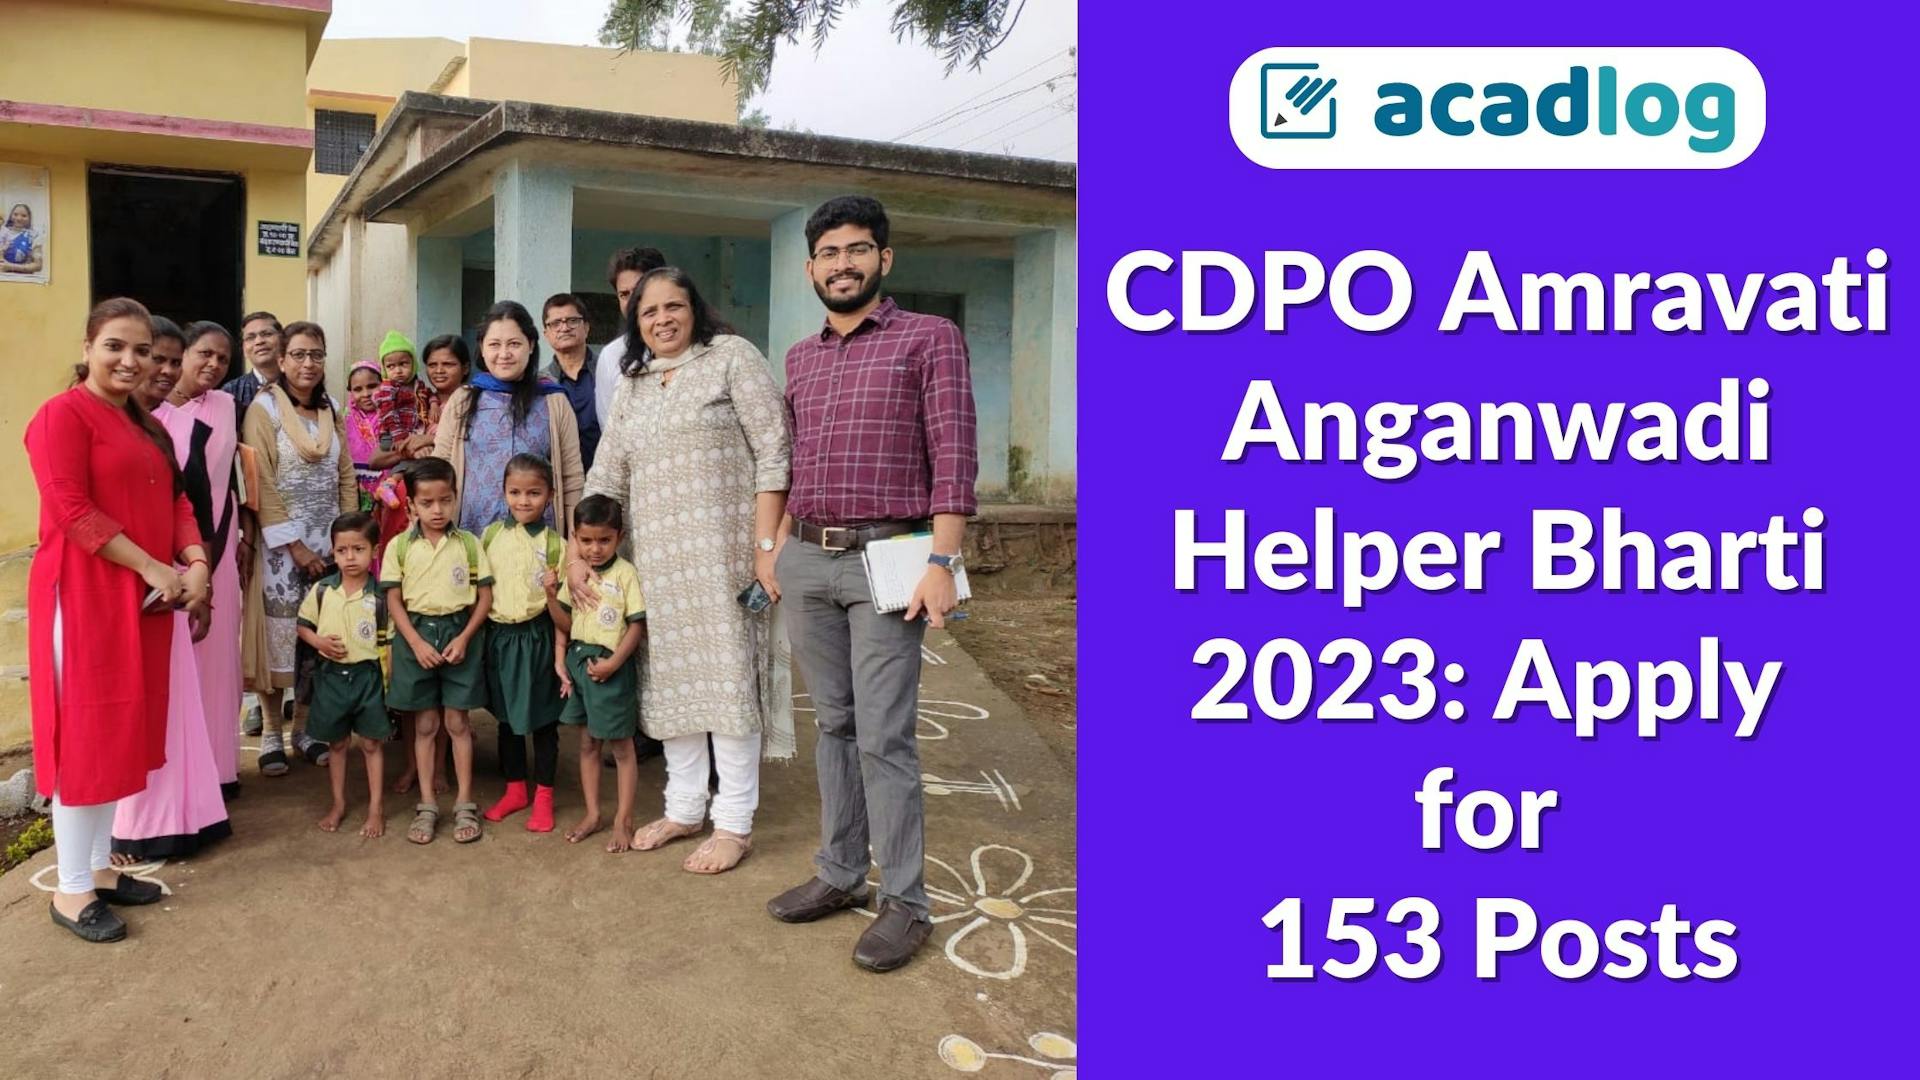 CDPO Amravati Anganwadi Helper Bharti 2023: Apply for 153 Posts